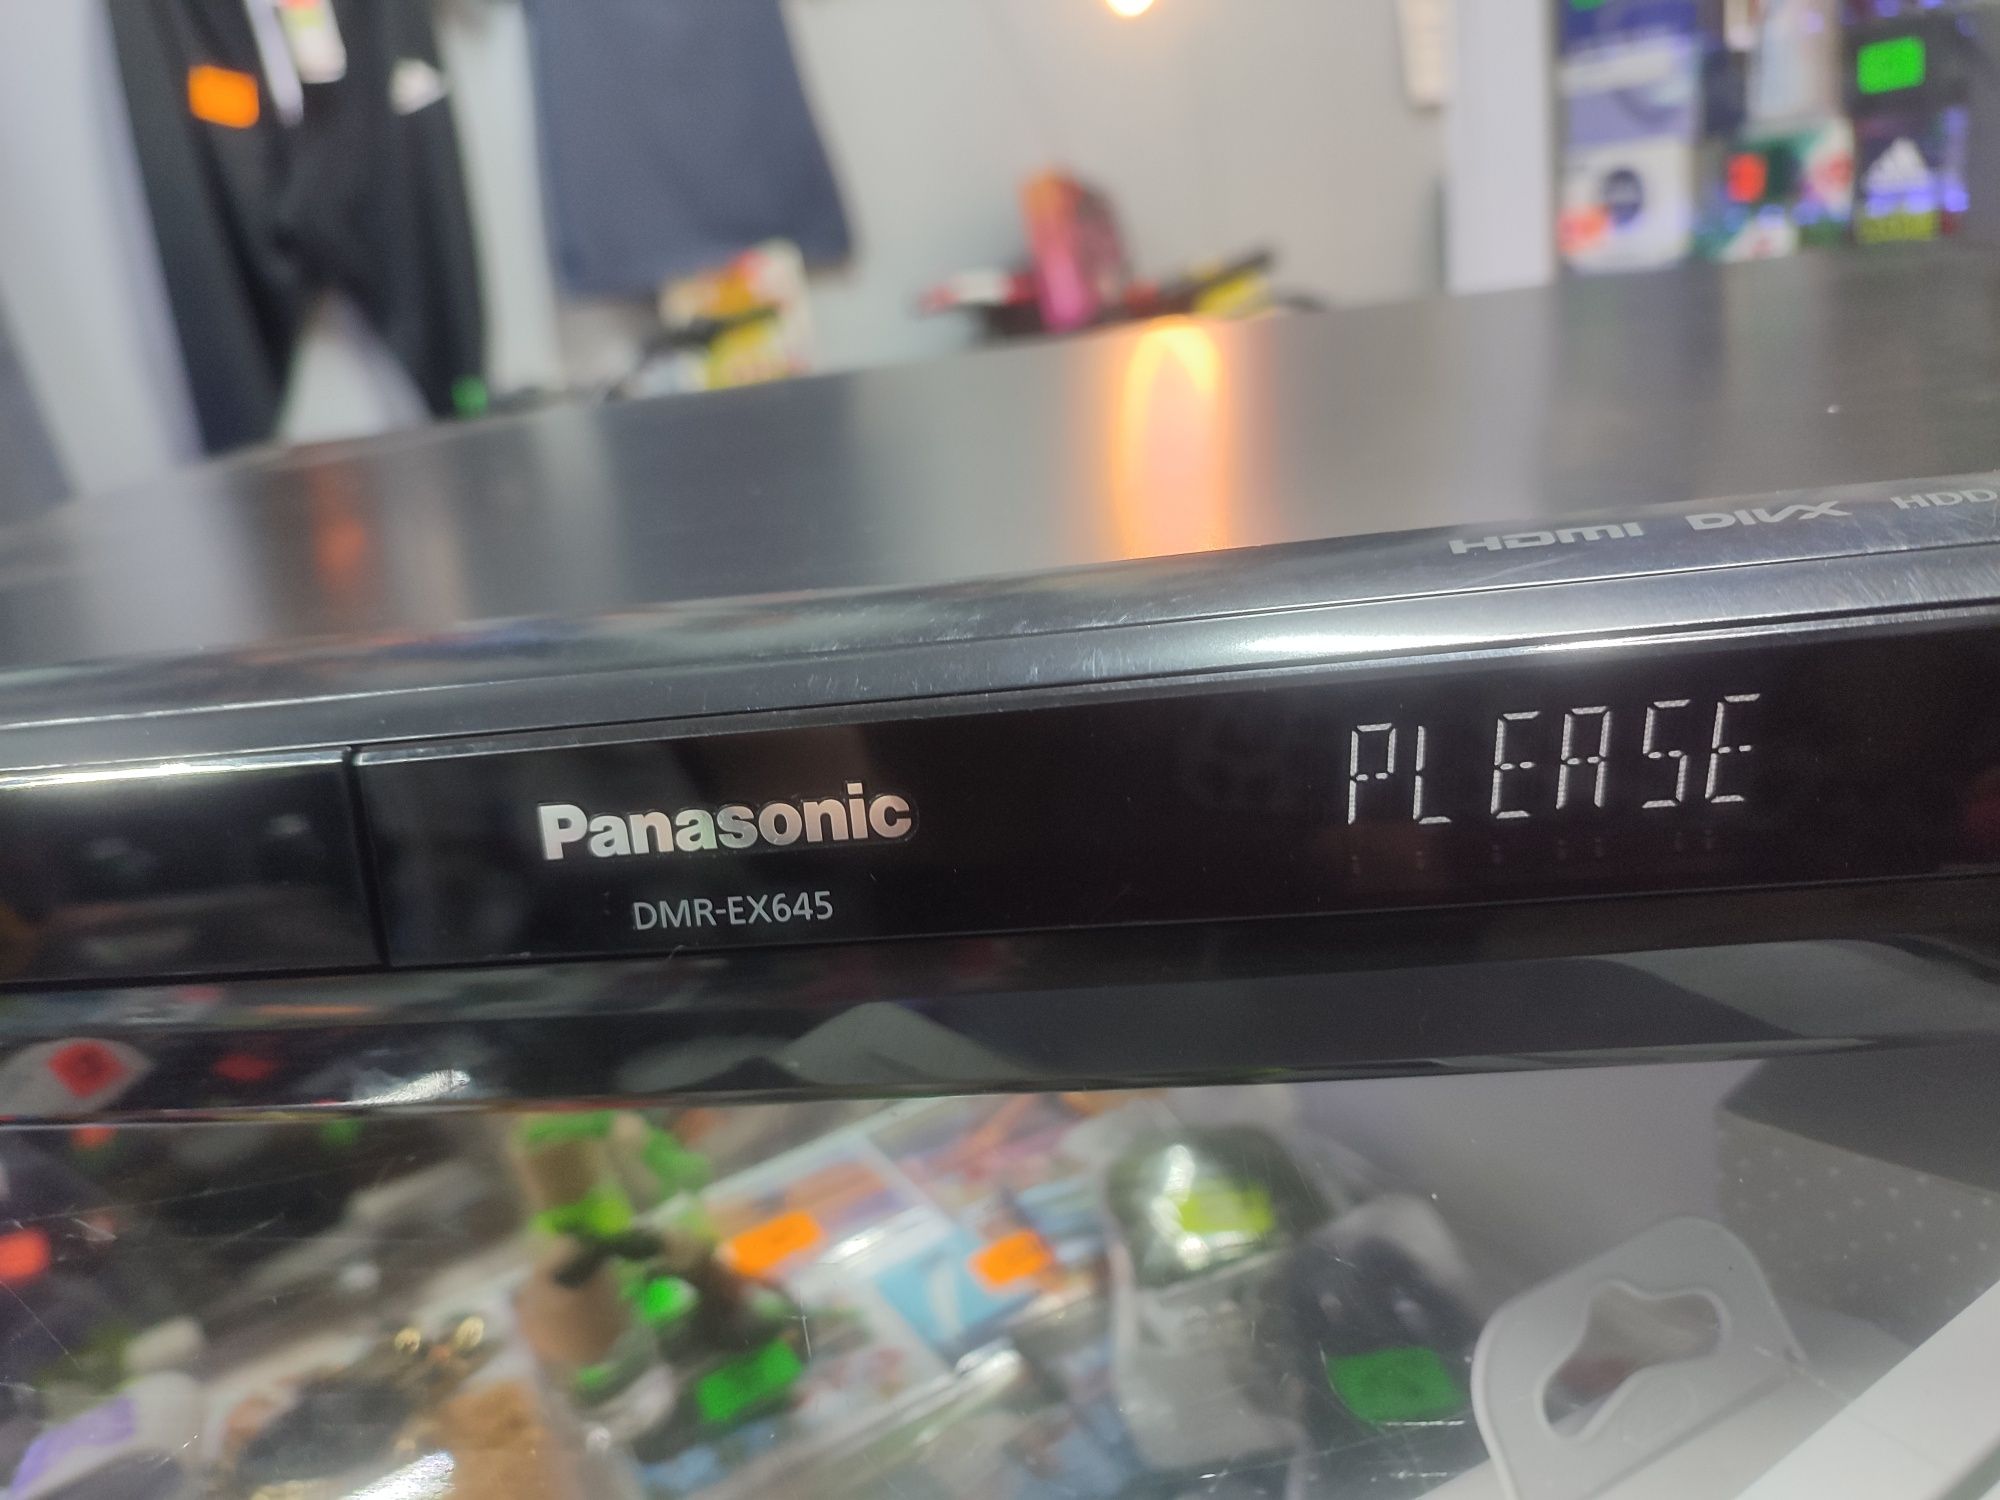 DMR-EX645 to nagrywarka DVD marki Panasonic z instrukcją po polsku